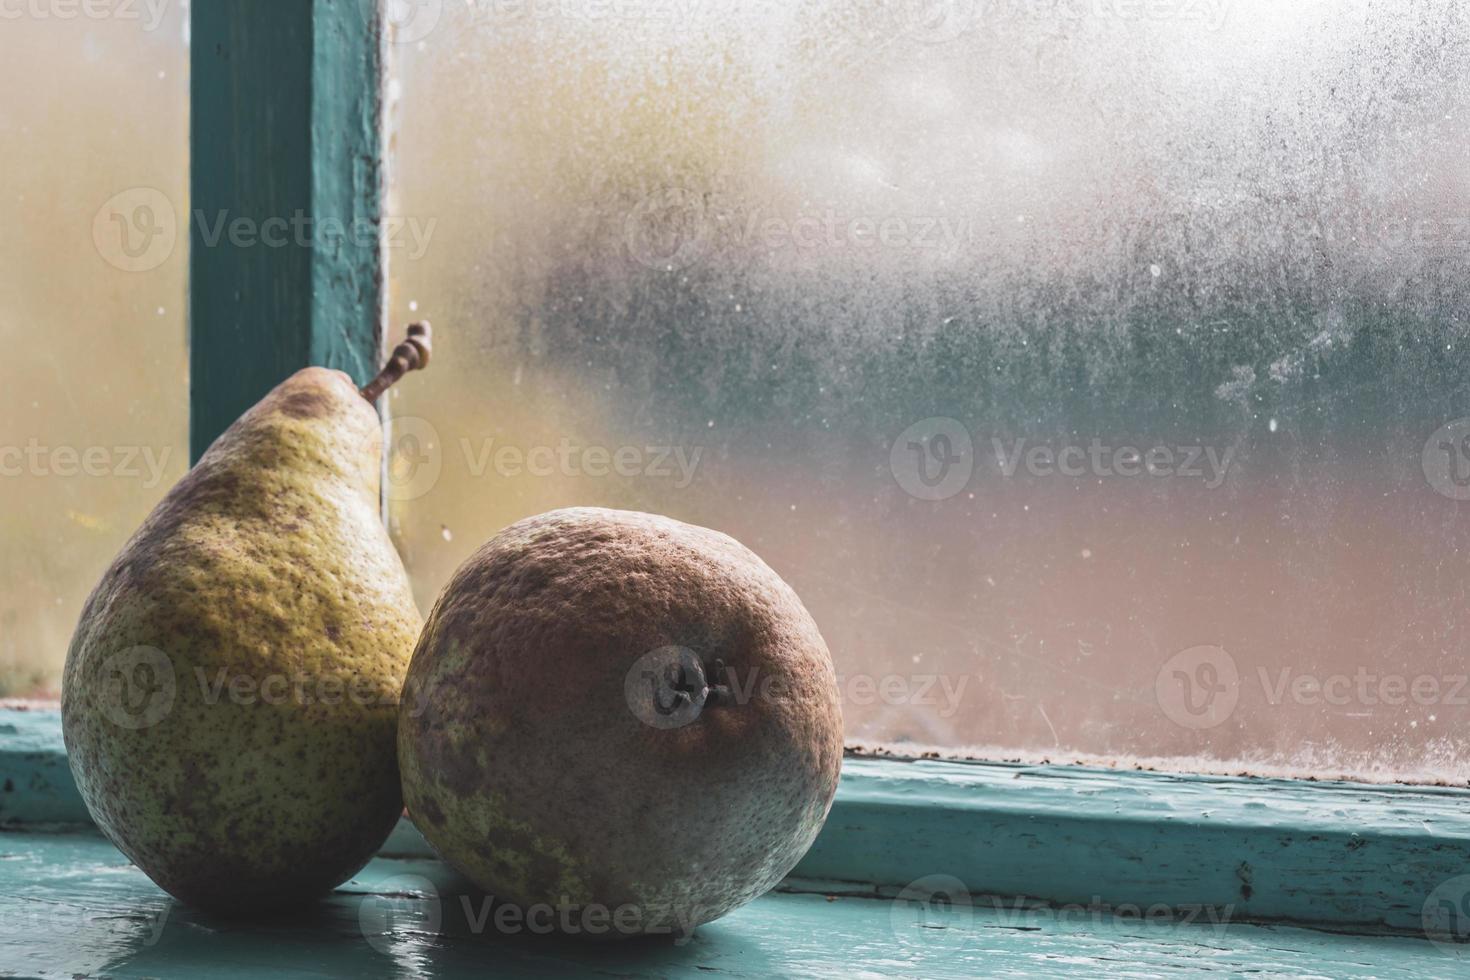 zwei große Birnen nach der Herbsternte auf einem alten, beschlagenen blauen Fenster. foto